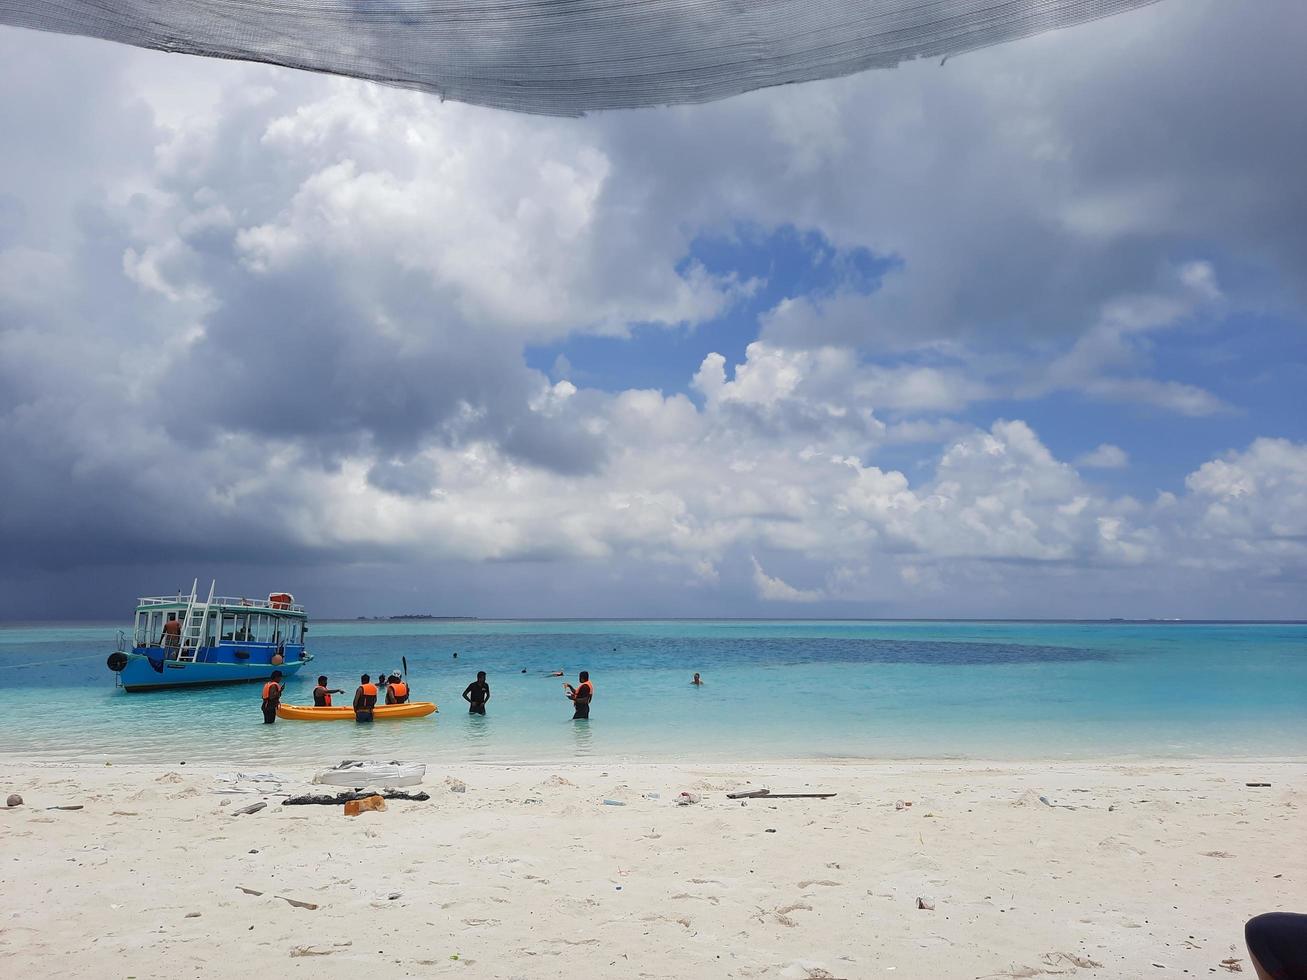 maldivas, abril de 2021 - los turistas pasan el día en una hermosa isla en las maldivas. Maldivas es una colección de diferentes islas. la mayoría de las islas son ricas en belleza natural. foto